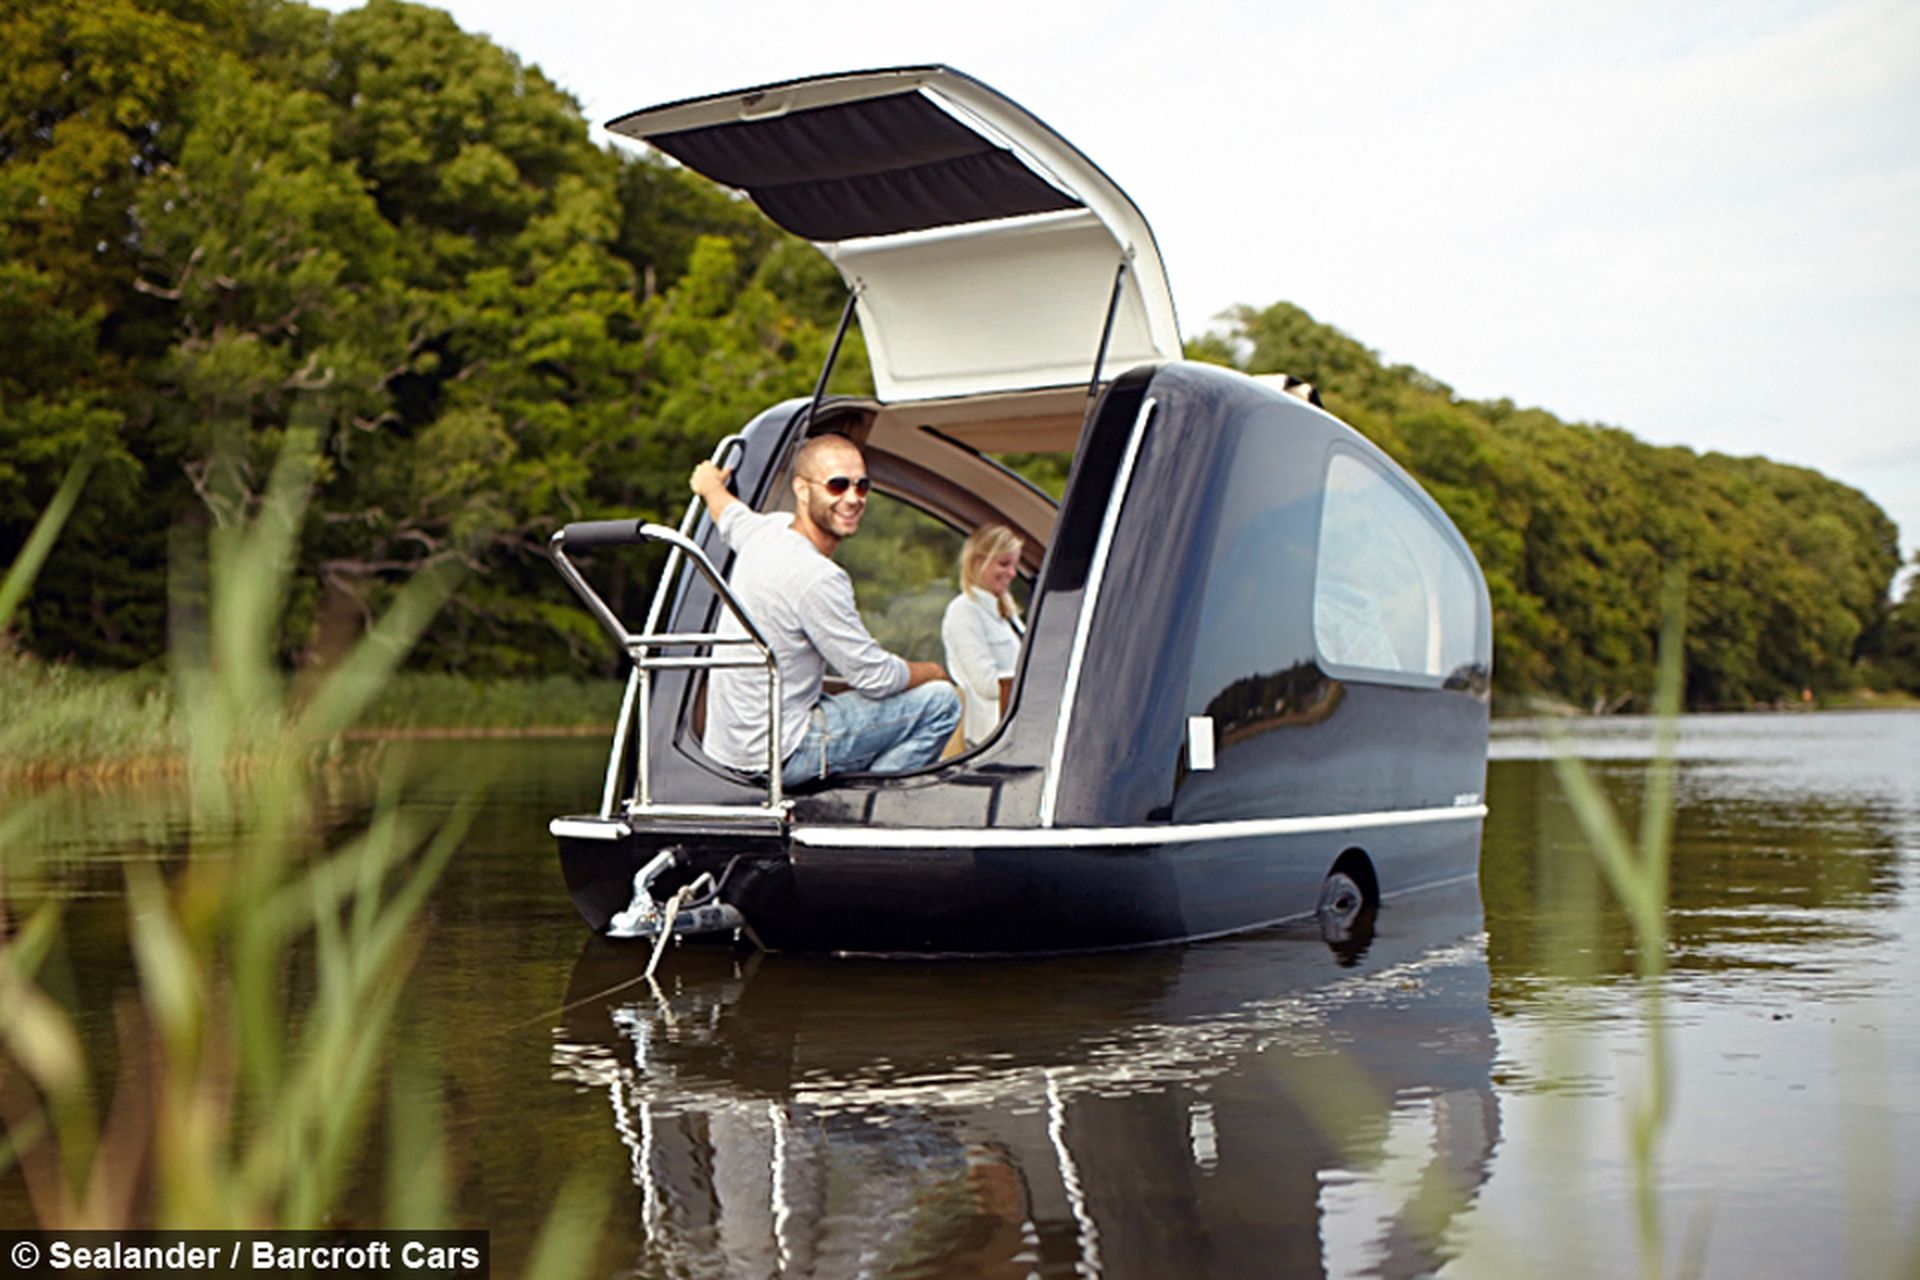 Innovadora caravana flotante que se convierte en barco